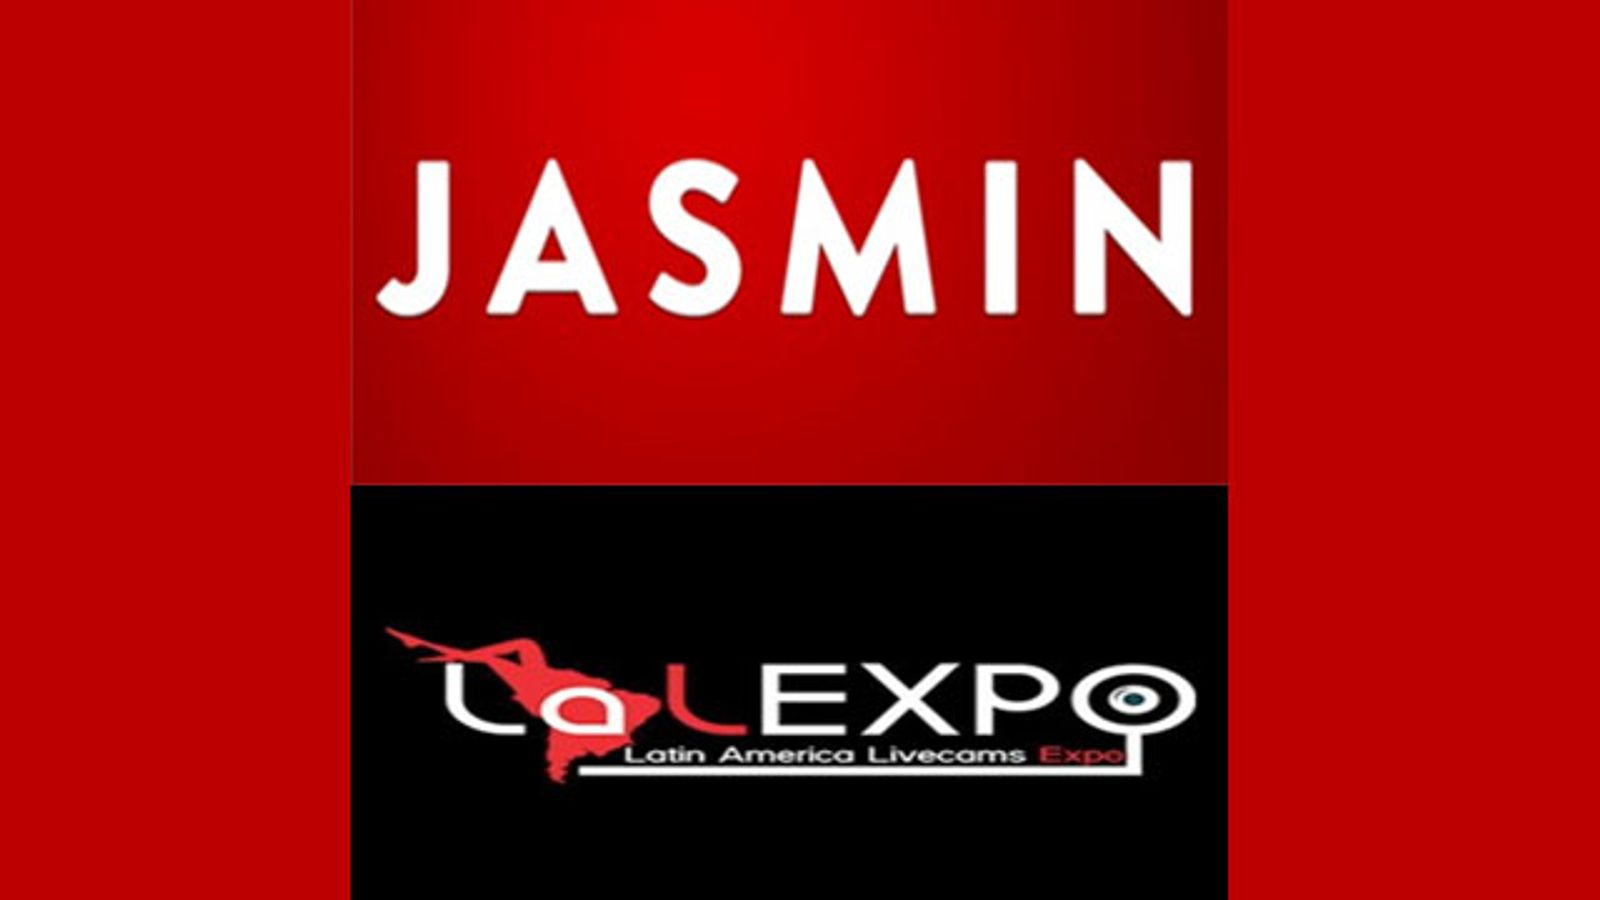 Jasmin.com, AJ Studios Team Up for LALExpo Cam Industry Event